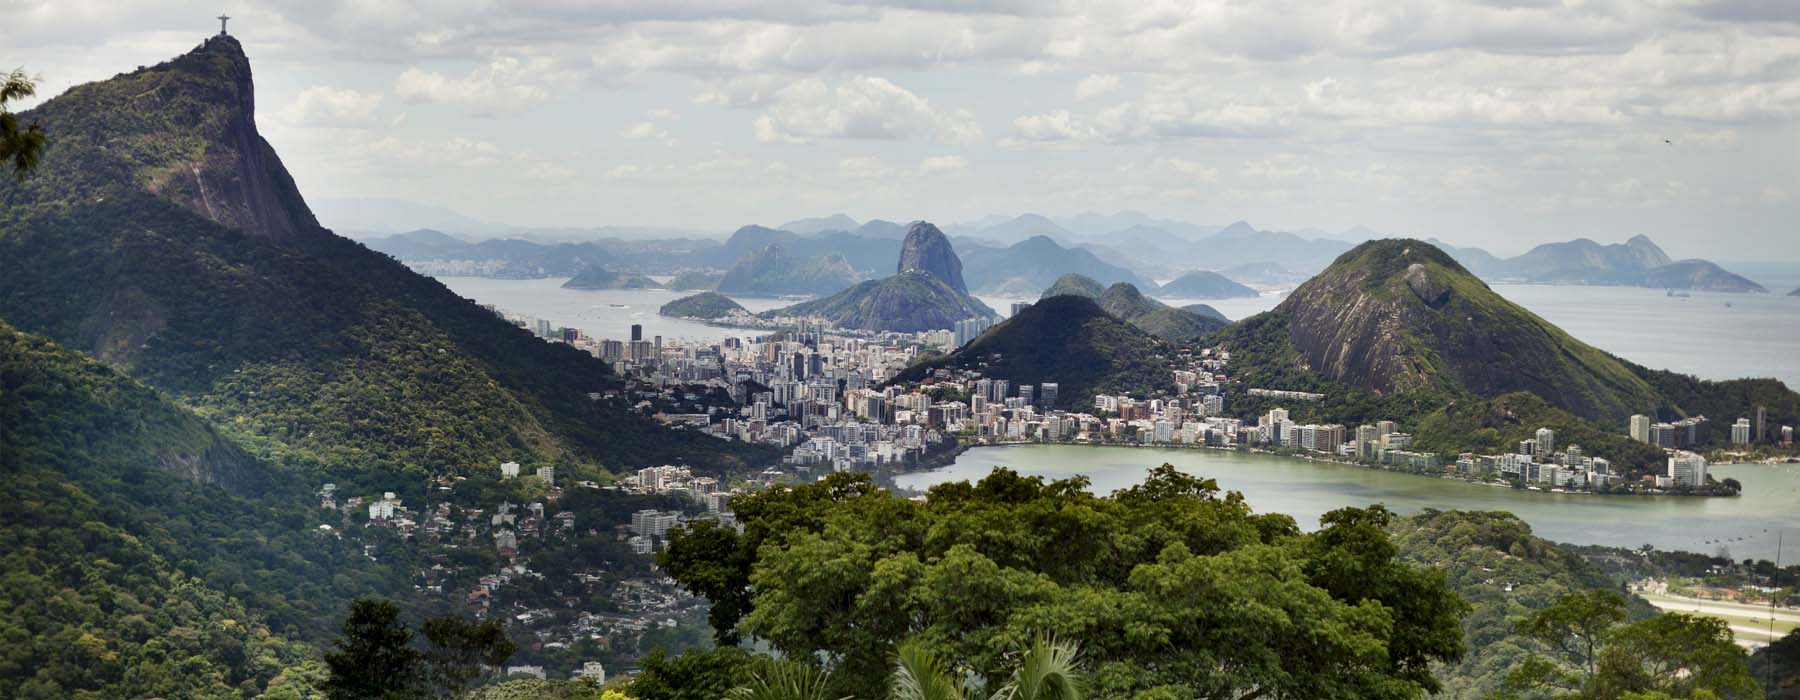 Rio de Janeiro<br class="hidden-md hidden-lg" /> Holidays